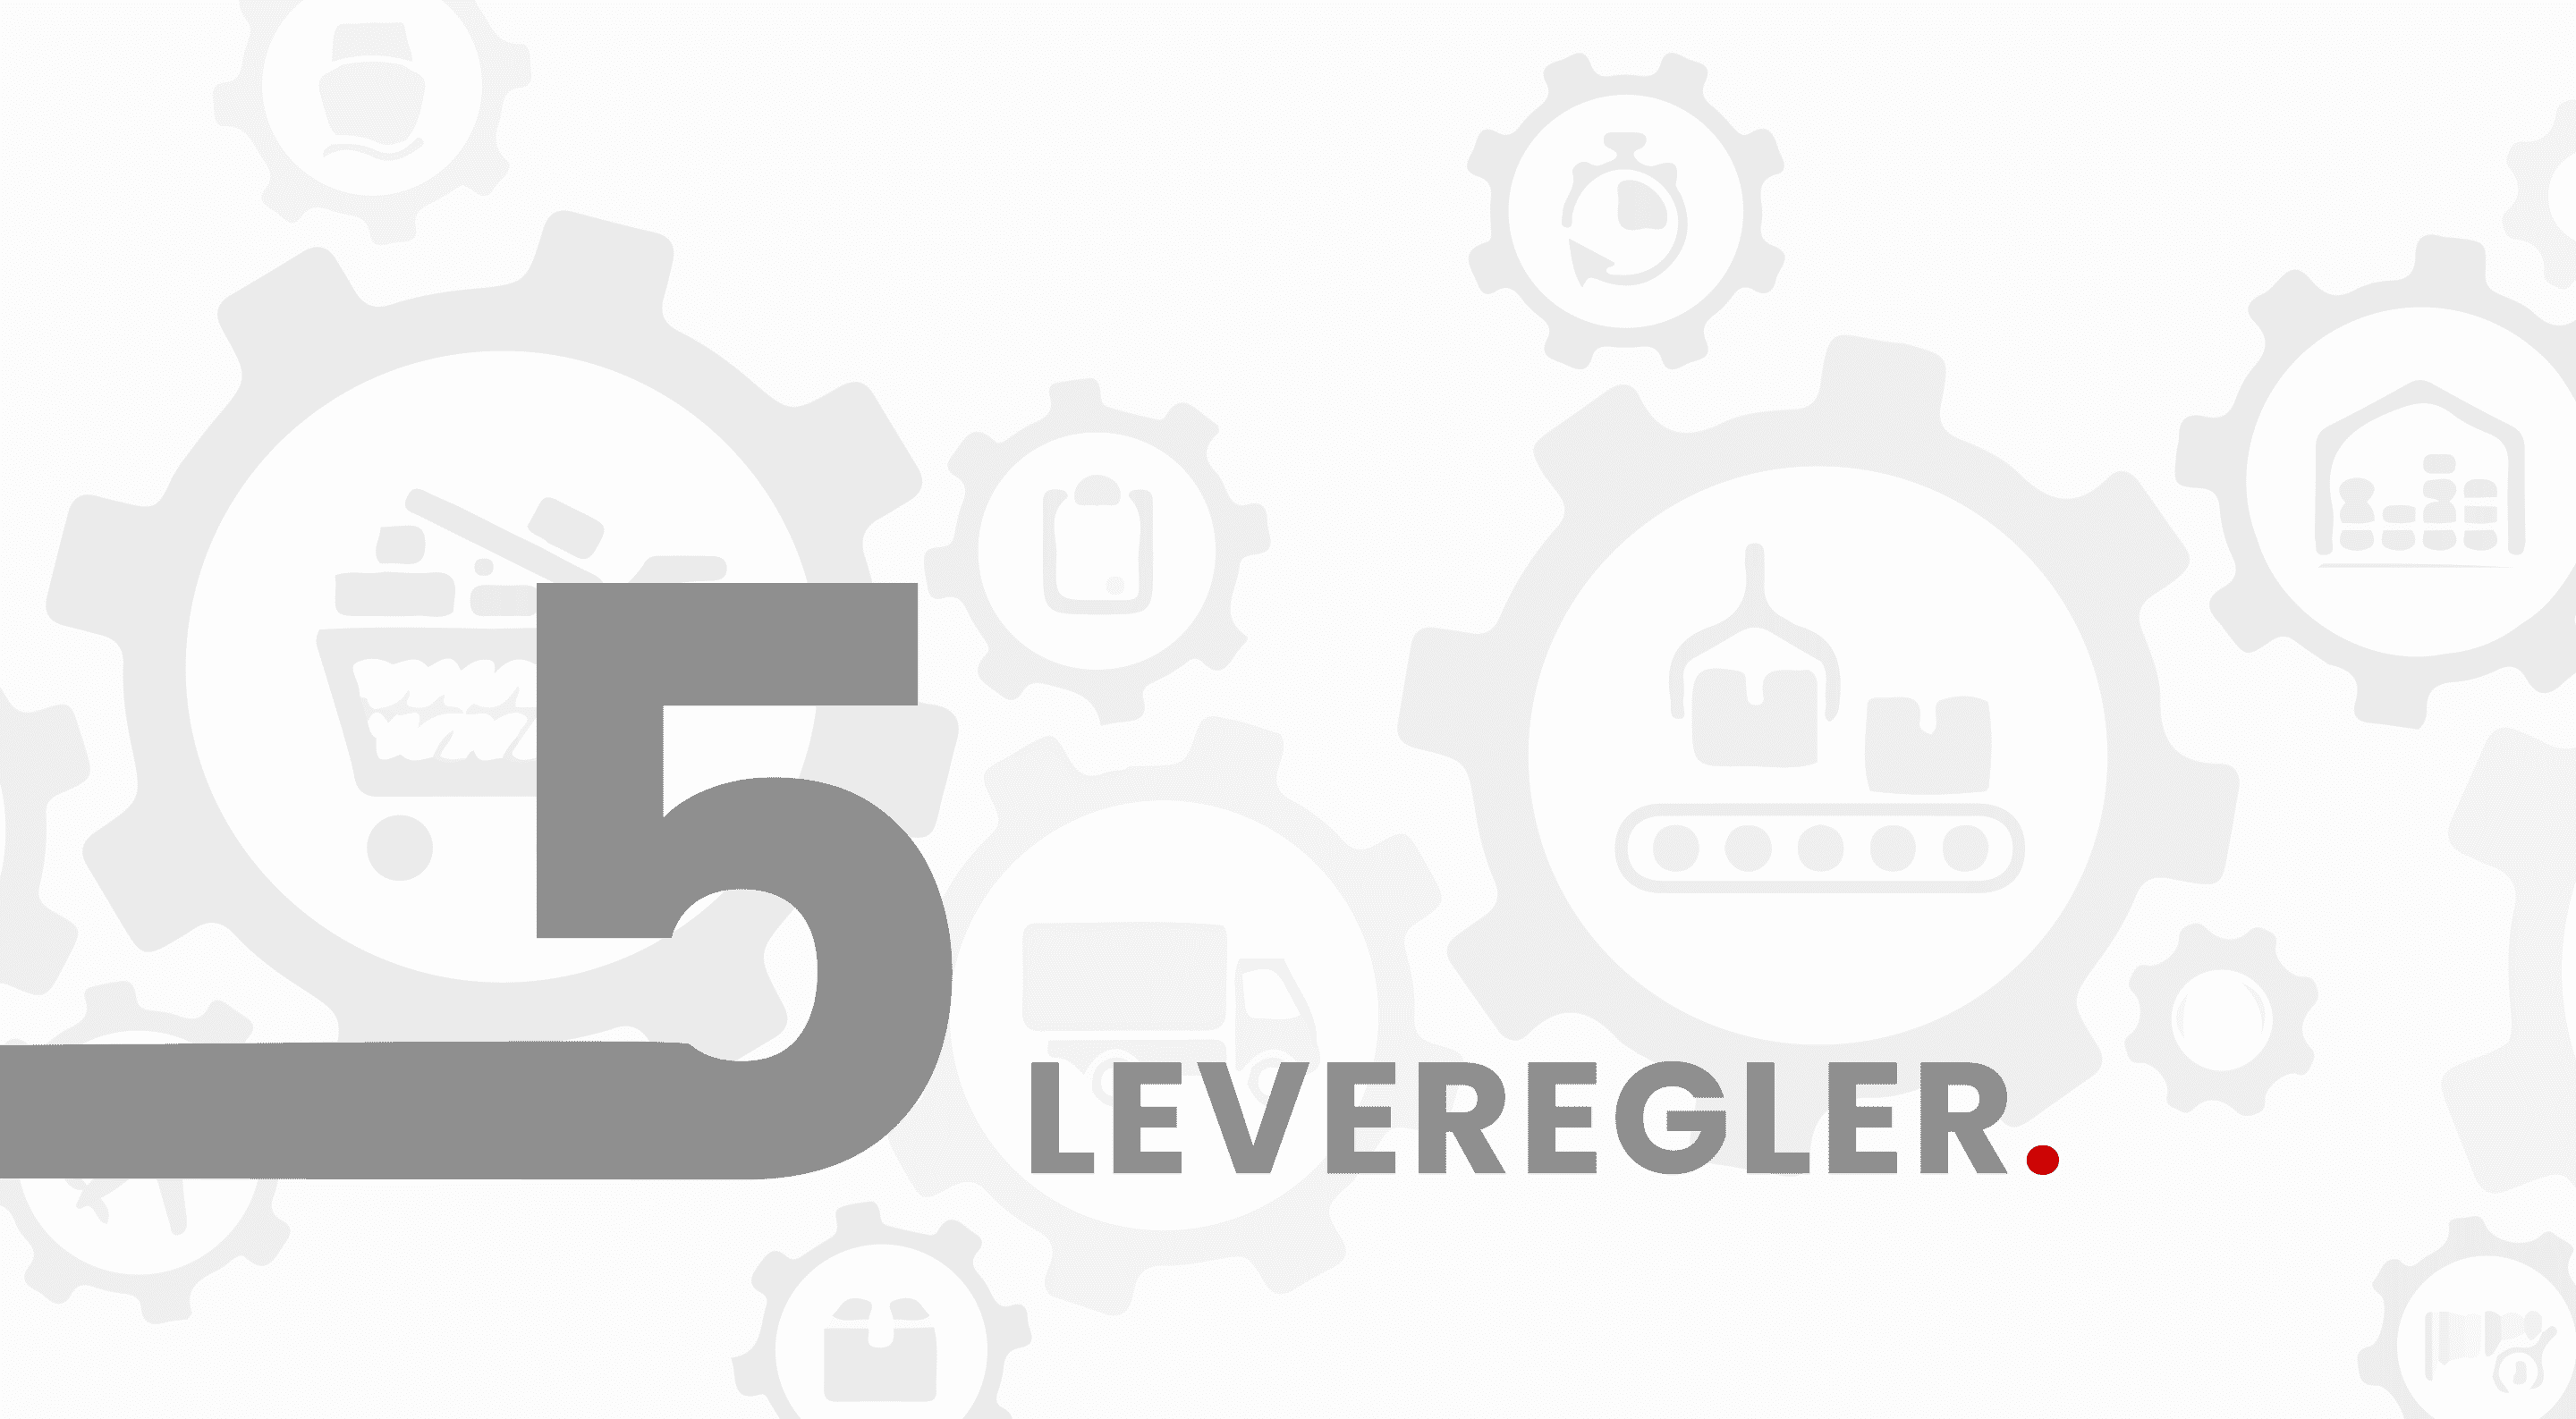 web-banner-5-leveregler-til-en-effektiv-supply-chain-banner